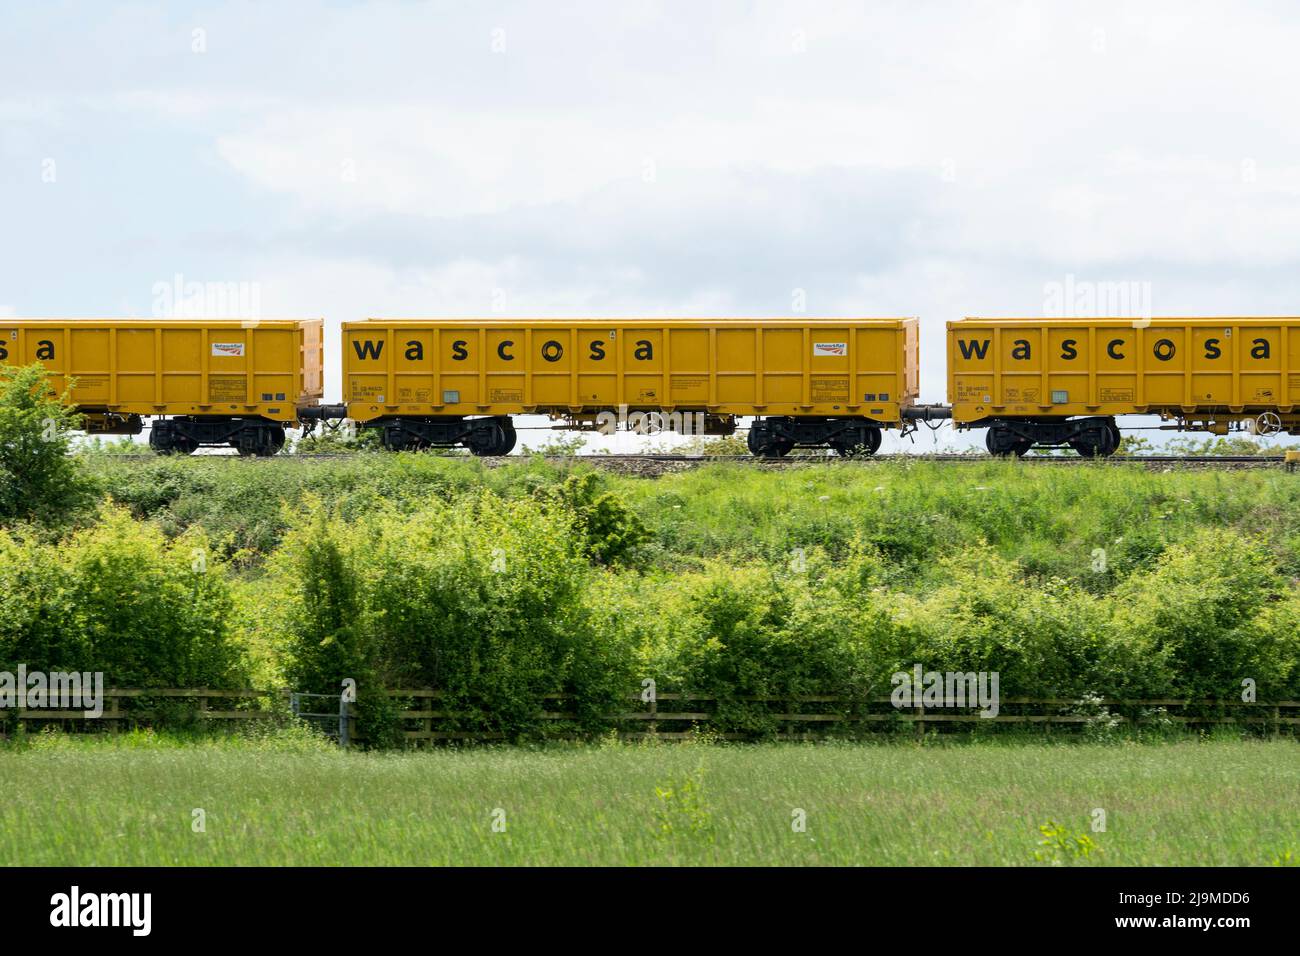 Wascosa wagons on a Network Rail train, Warwickshire, UK Stock Photo